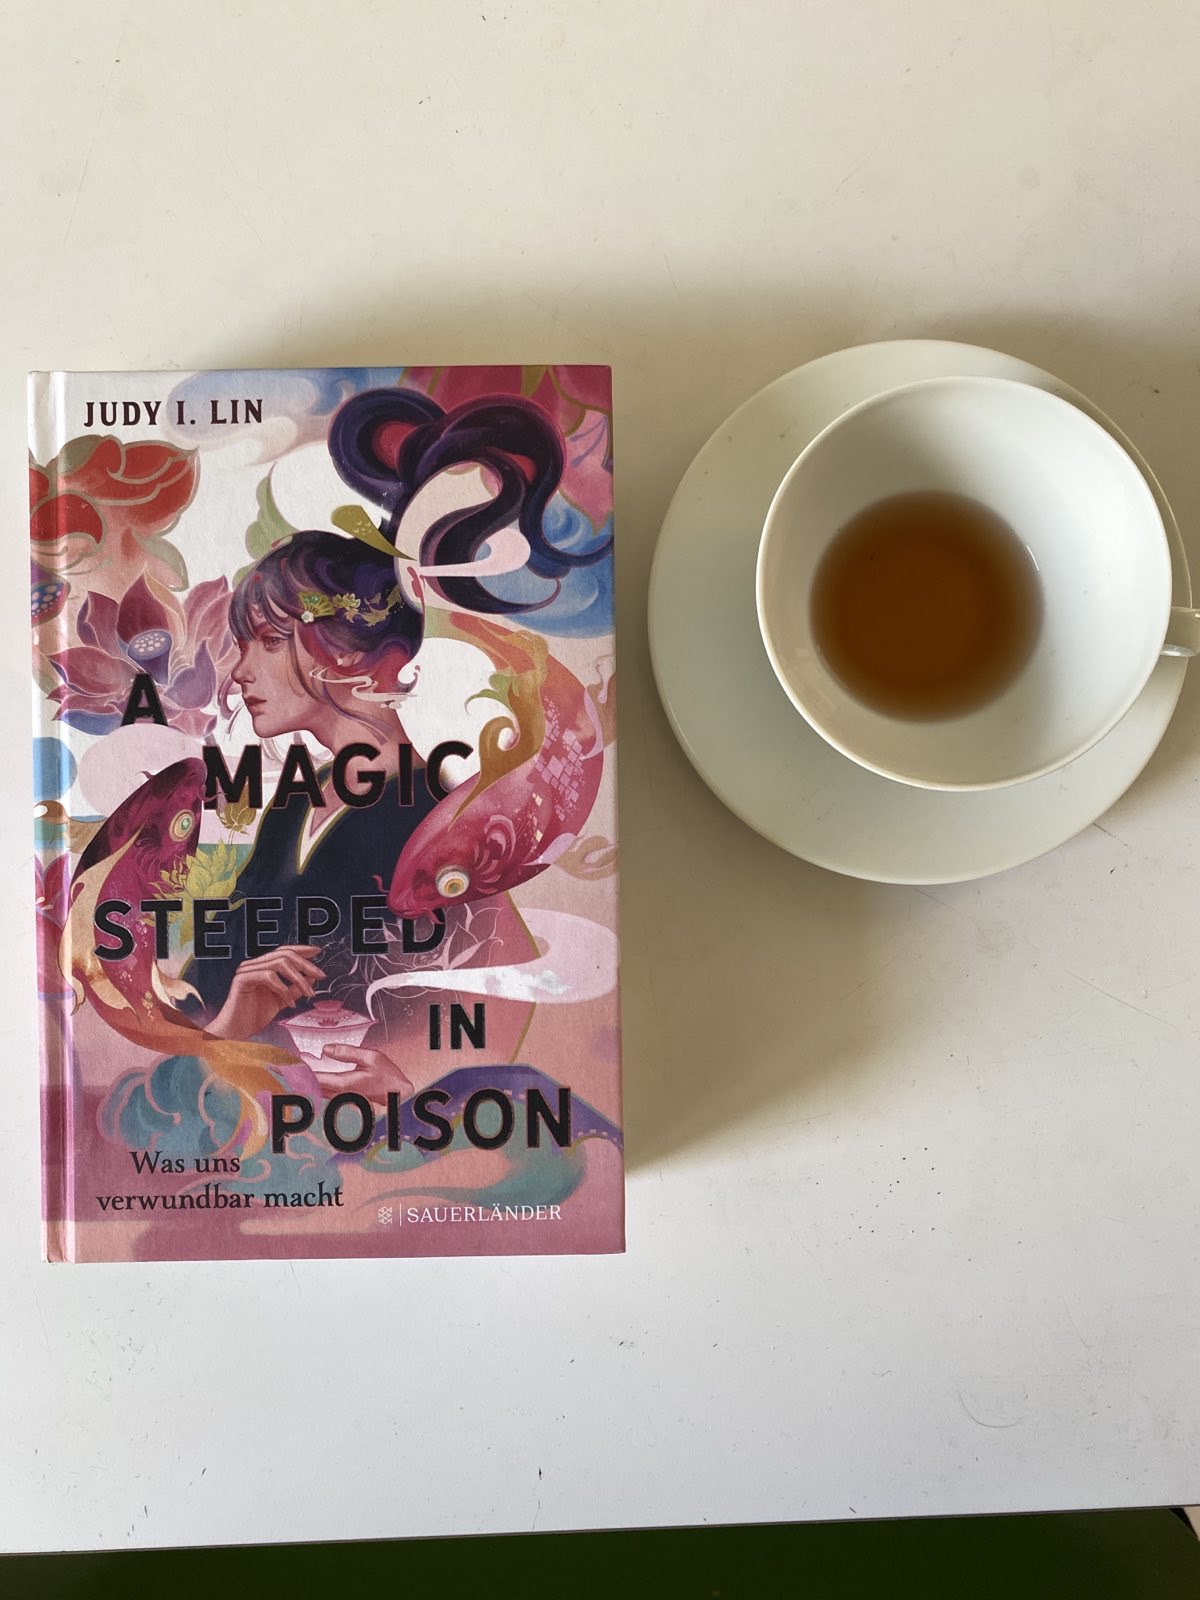 A Magic steeped in Poison – Was uns verwundbar macht